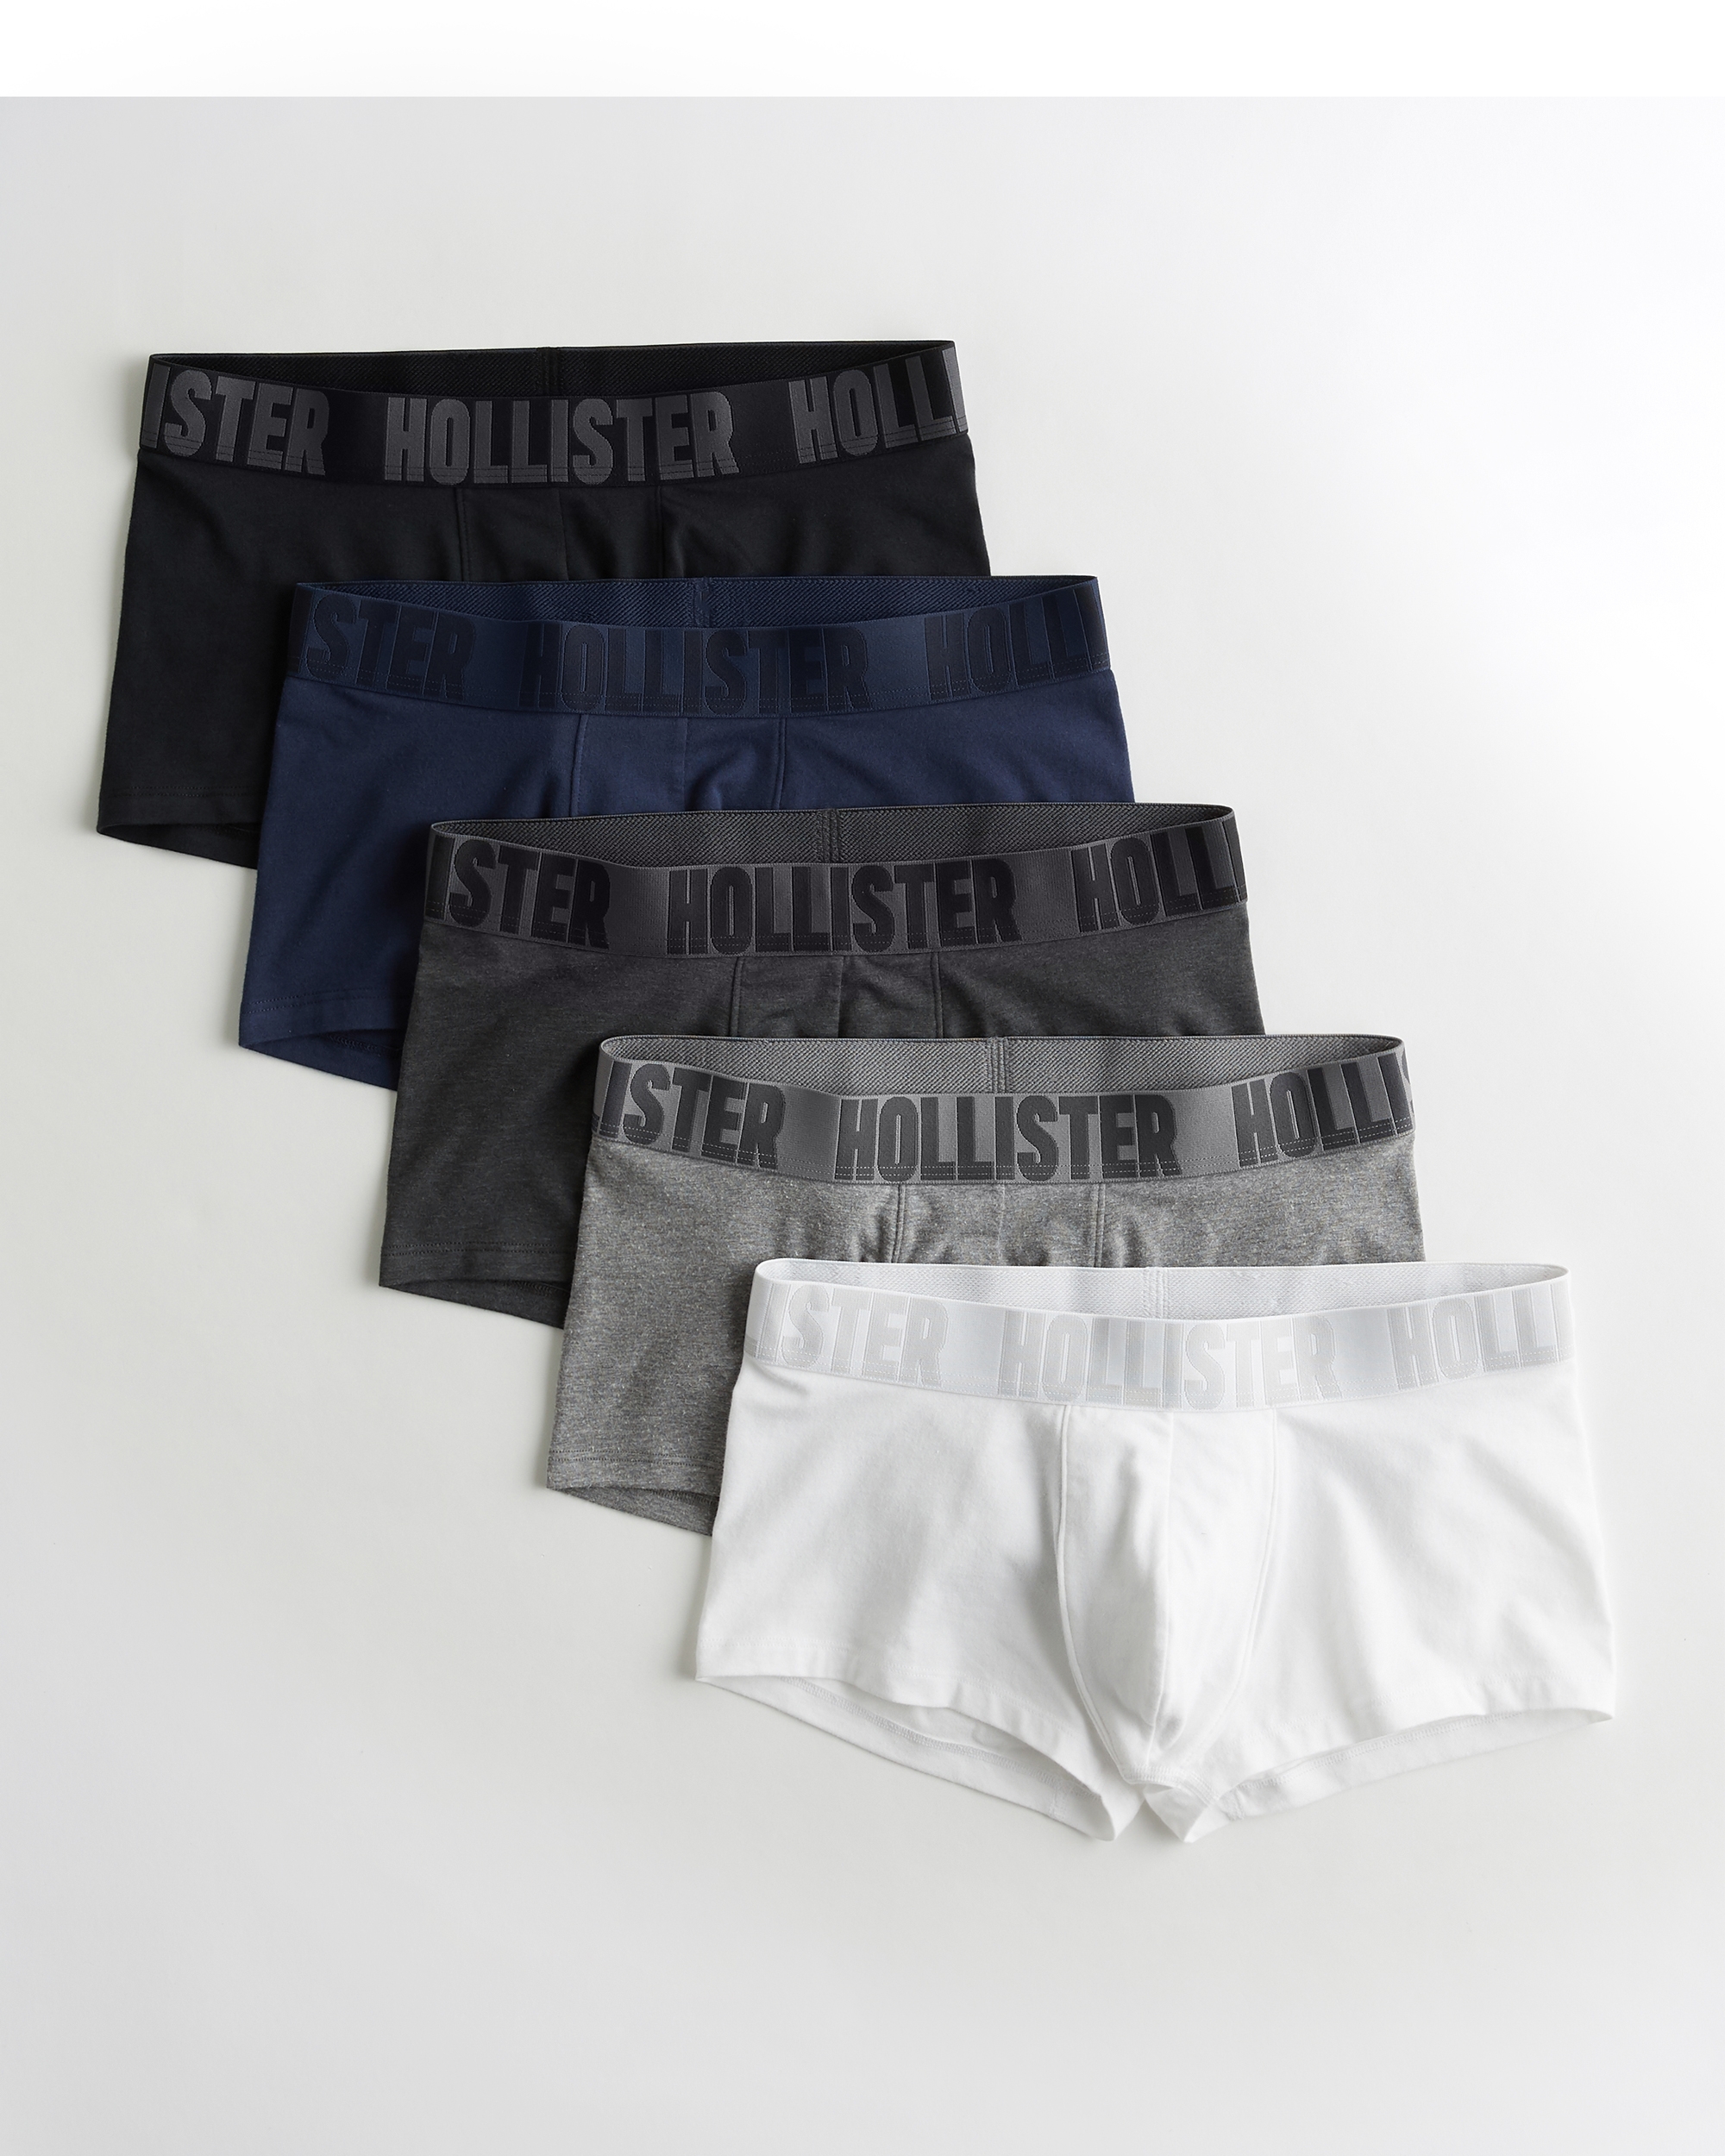 hollister male underwear